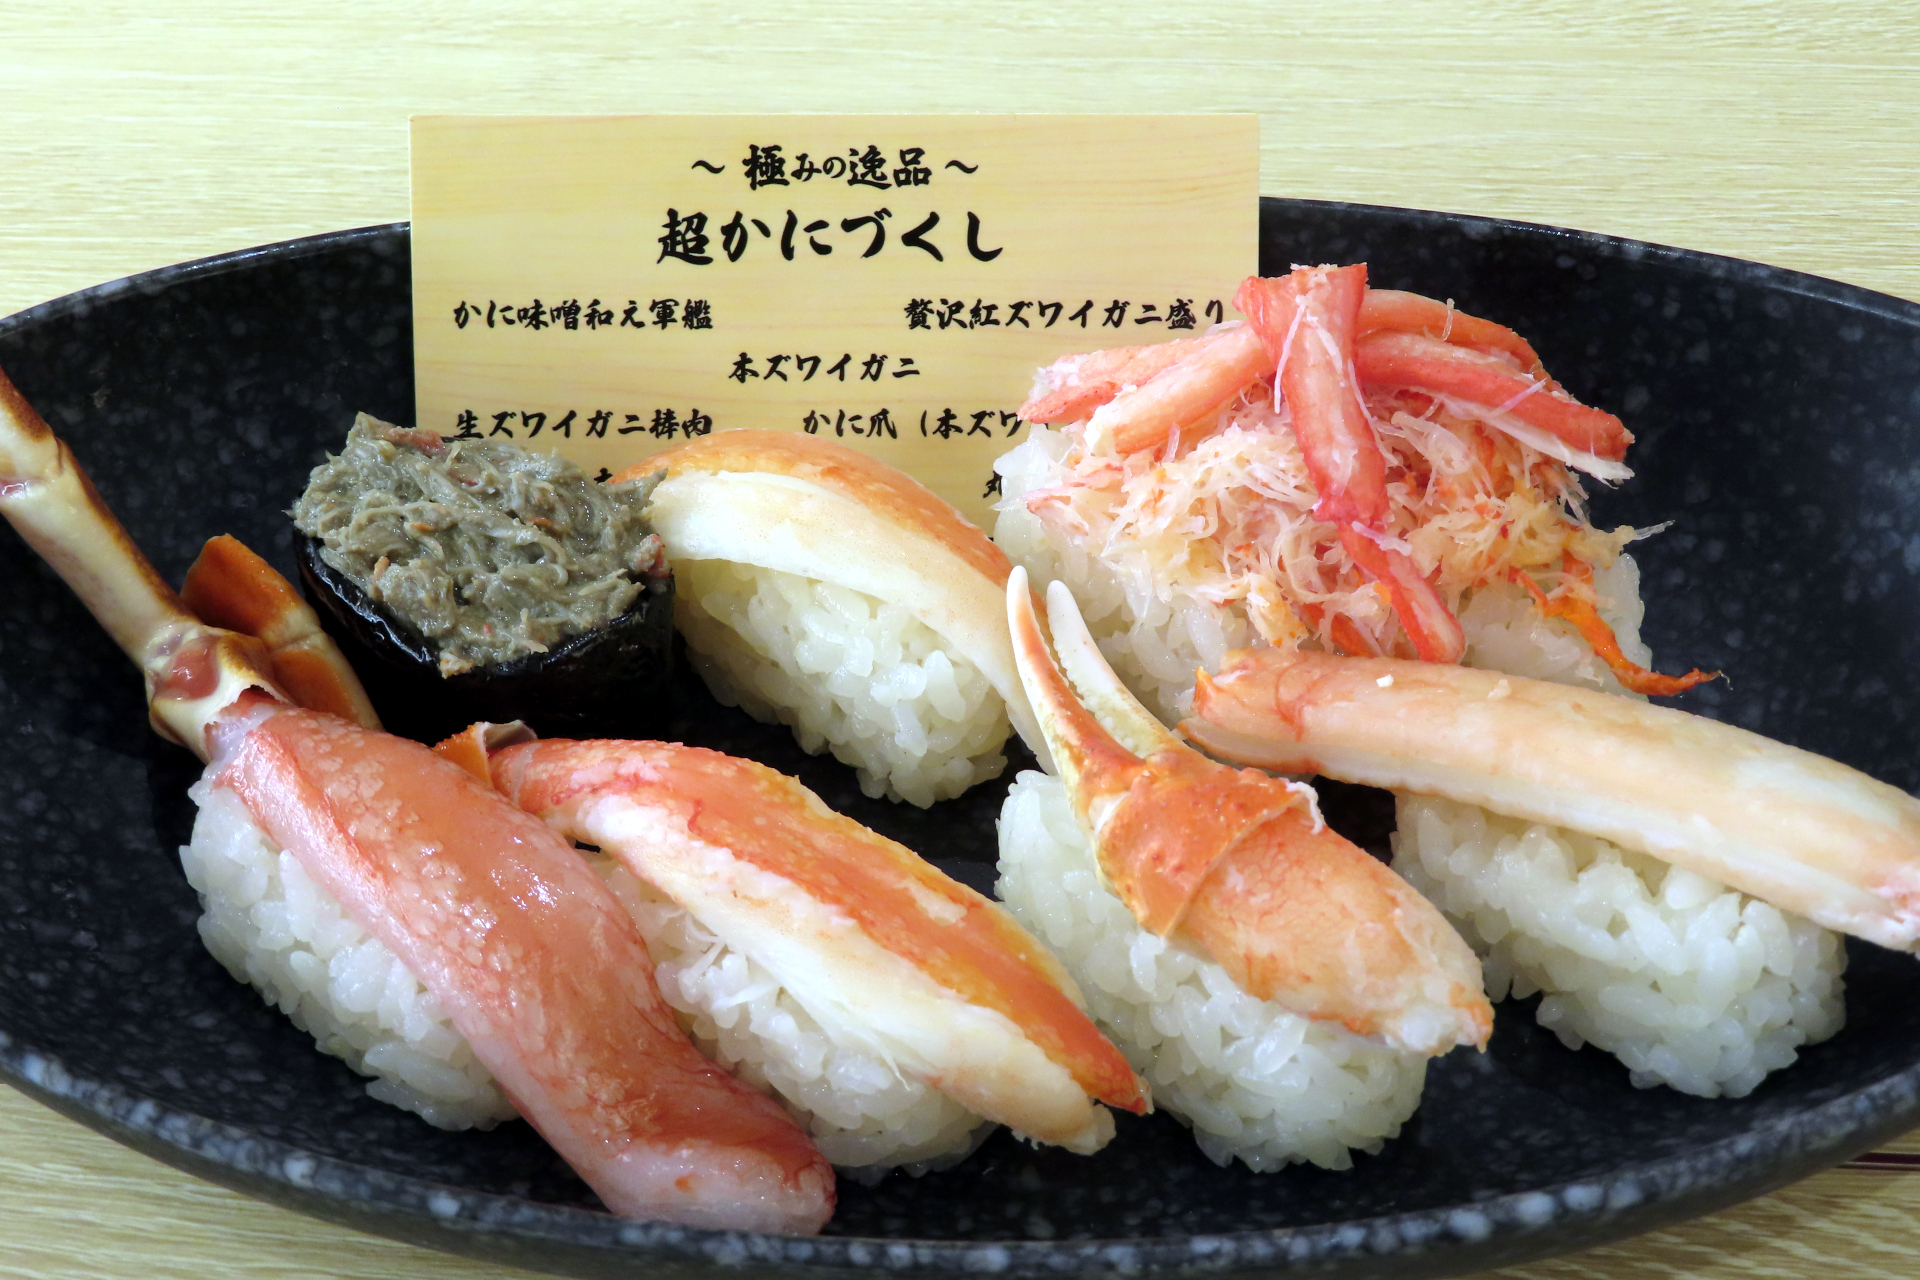 くら寿司「極上かに」フェア、12月15日スタート 卓上の無料のガリは